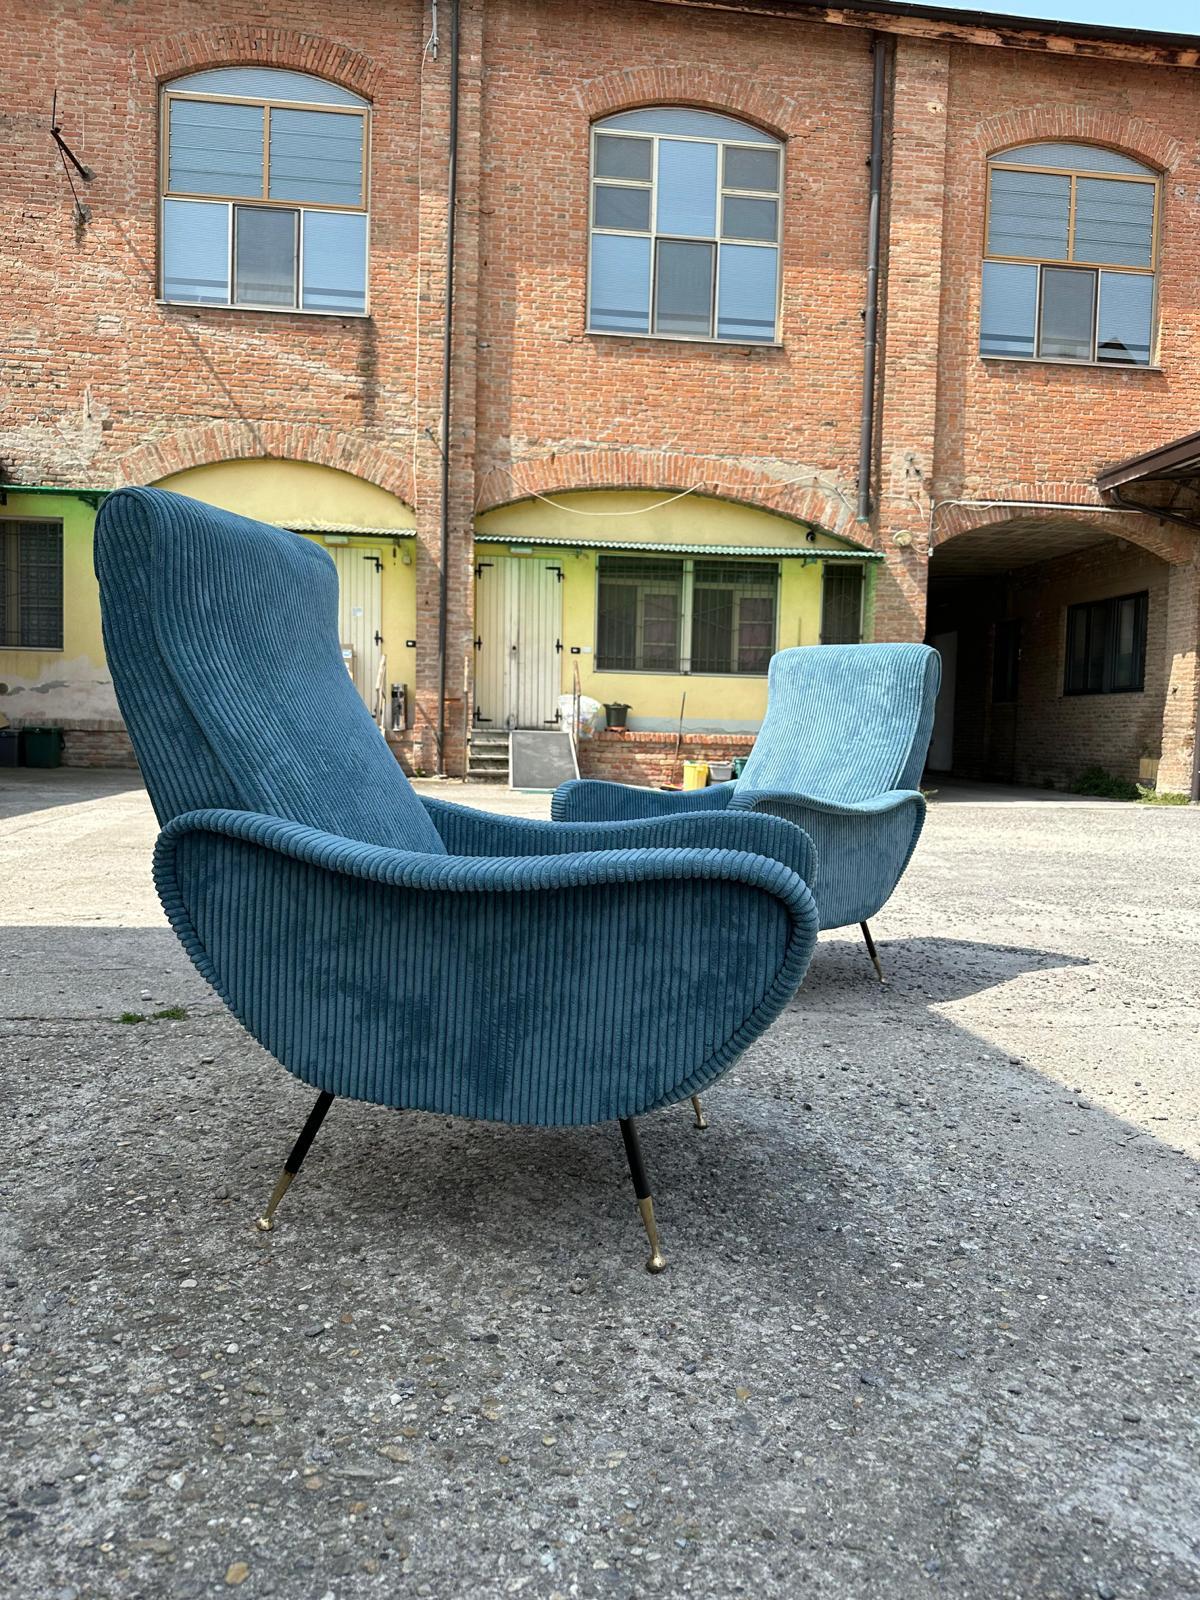 Mid-Century Modern Modern-mid century, set of 2 italian armchairs from the 50s-60s